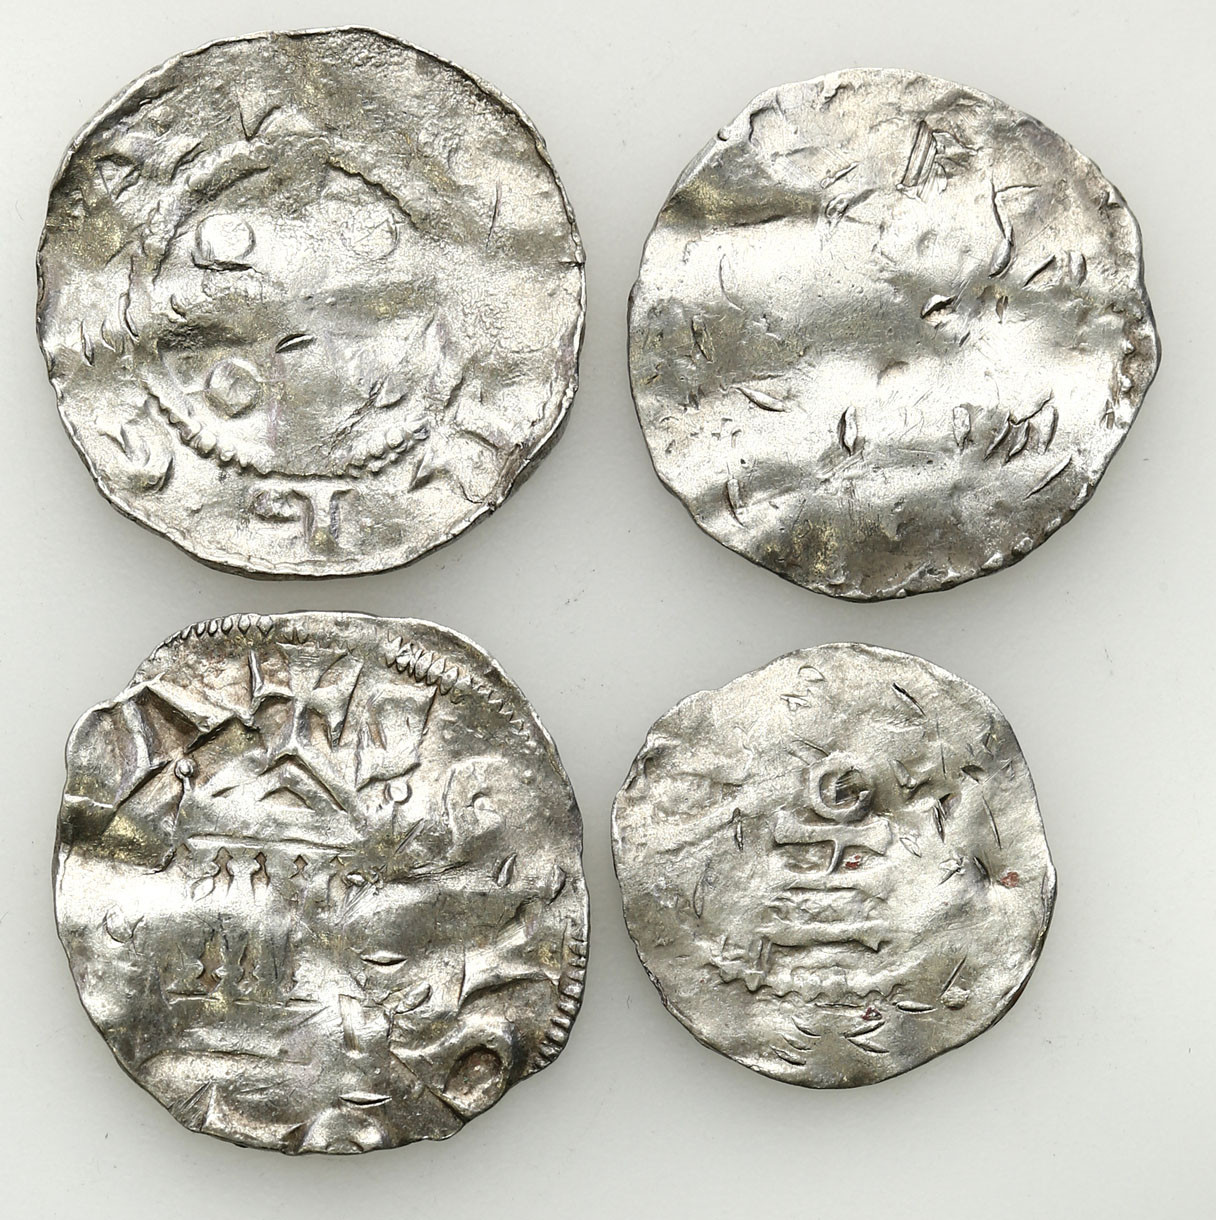 Niemcy, Dolna Lotaryngia - Kolonia, X/XI wiek. Denar typu kolońskiego i ich naśladownictwa, zestaw 4 monet